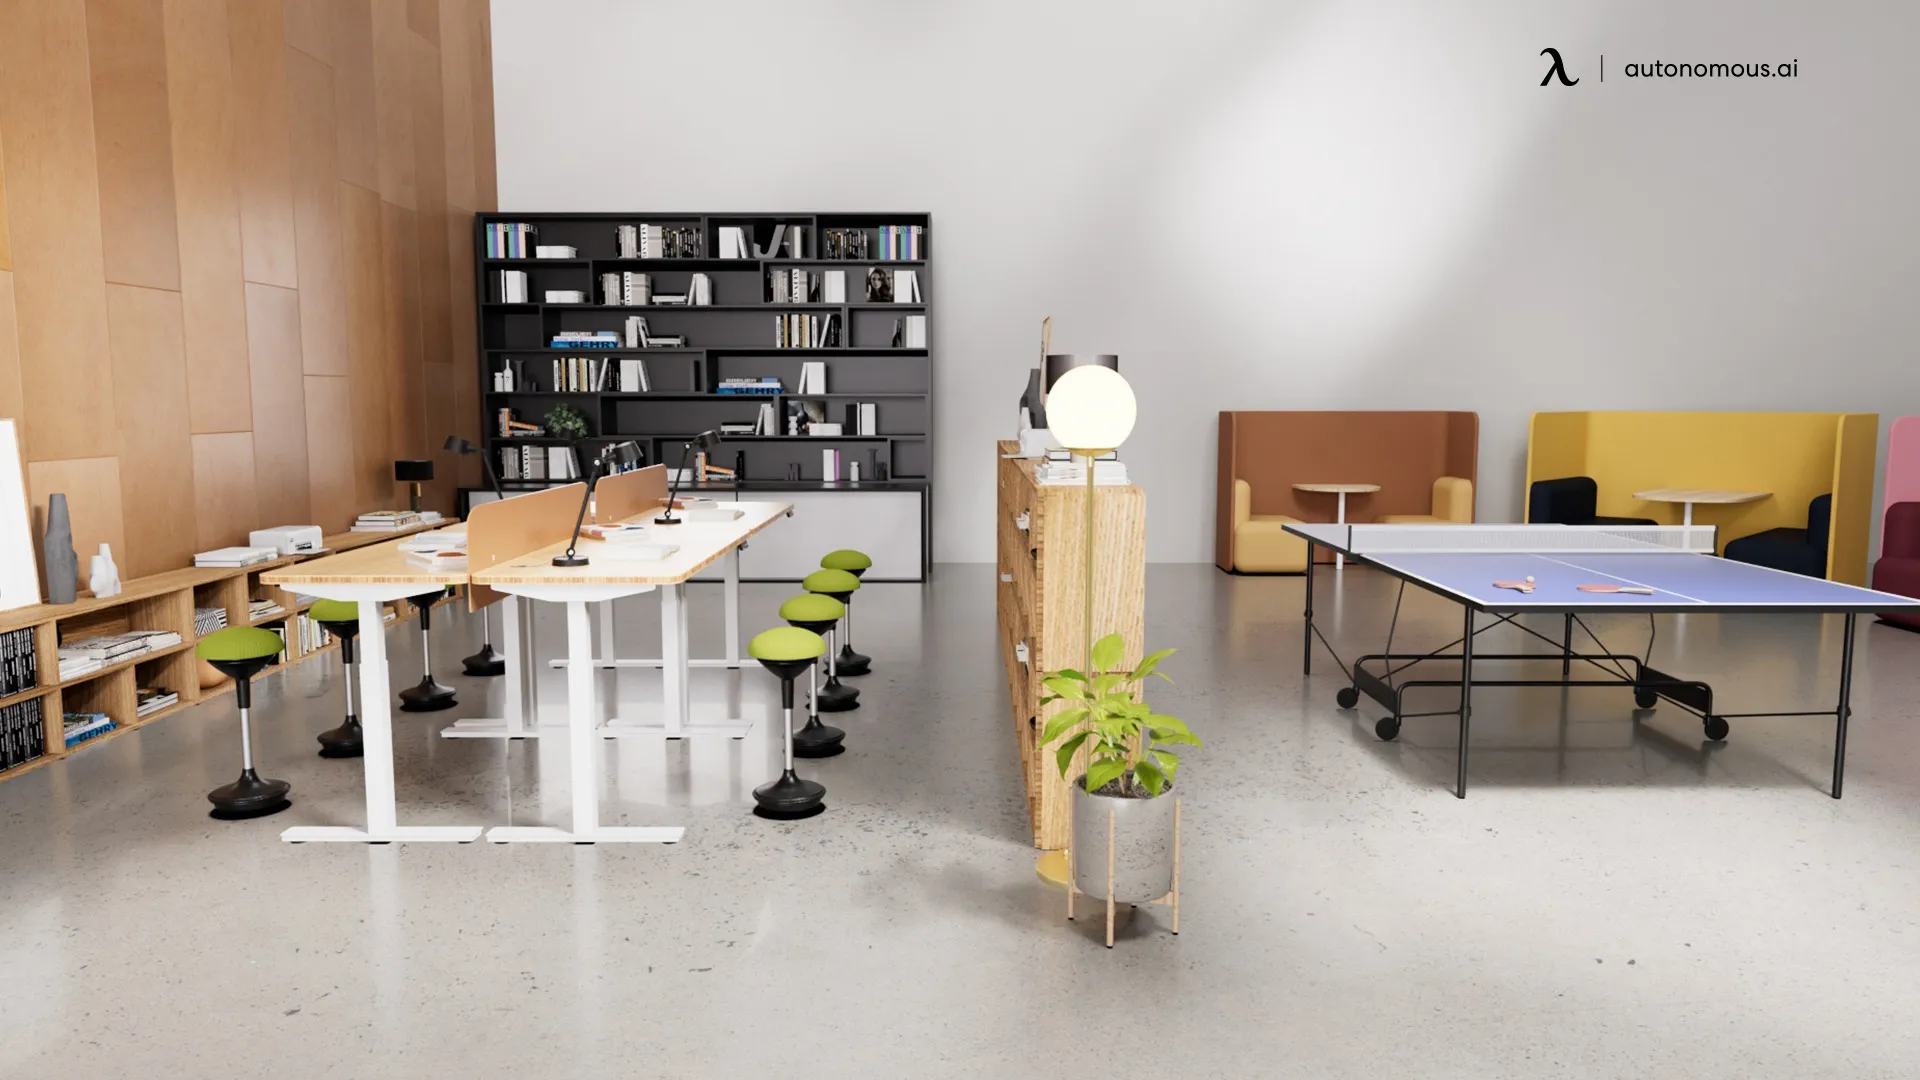 Autonomous.ai - Best Online Store for Ergonomic Office Furniture